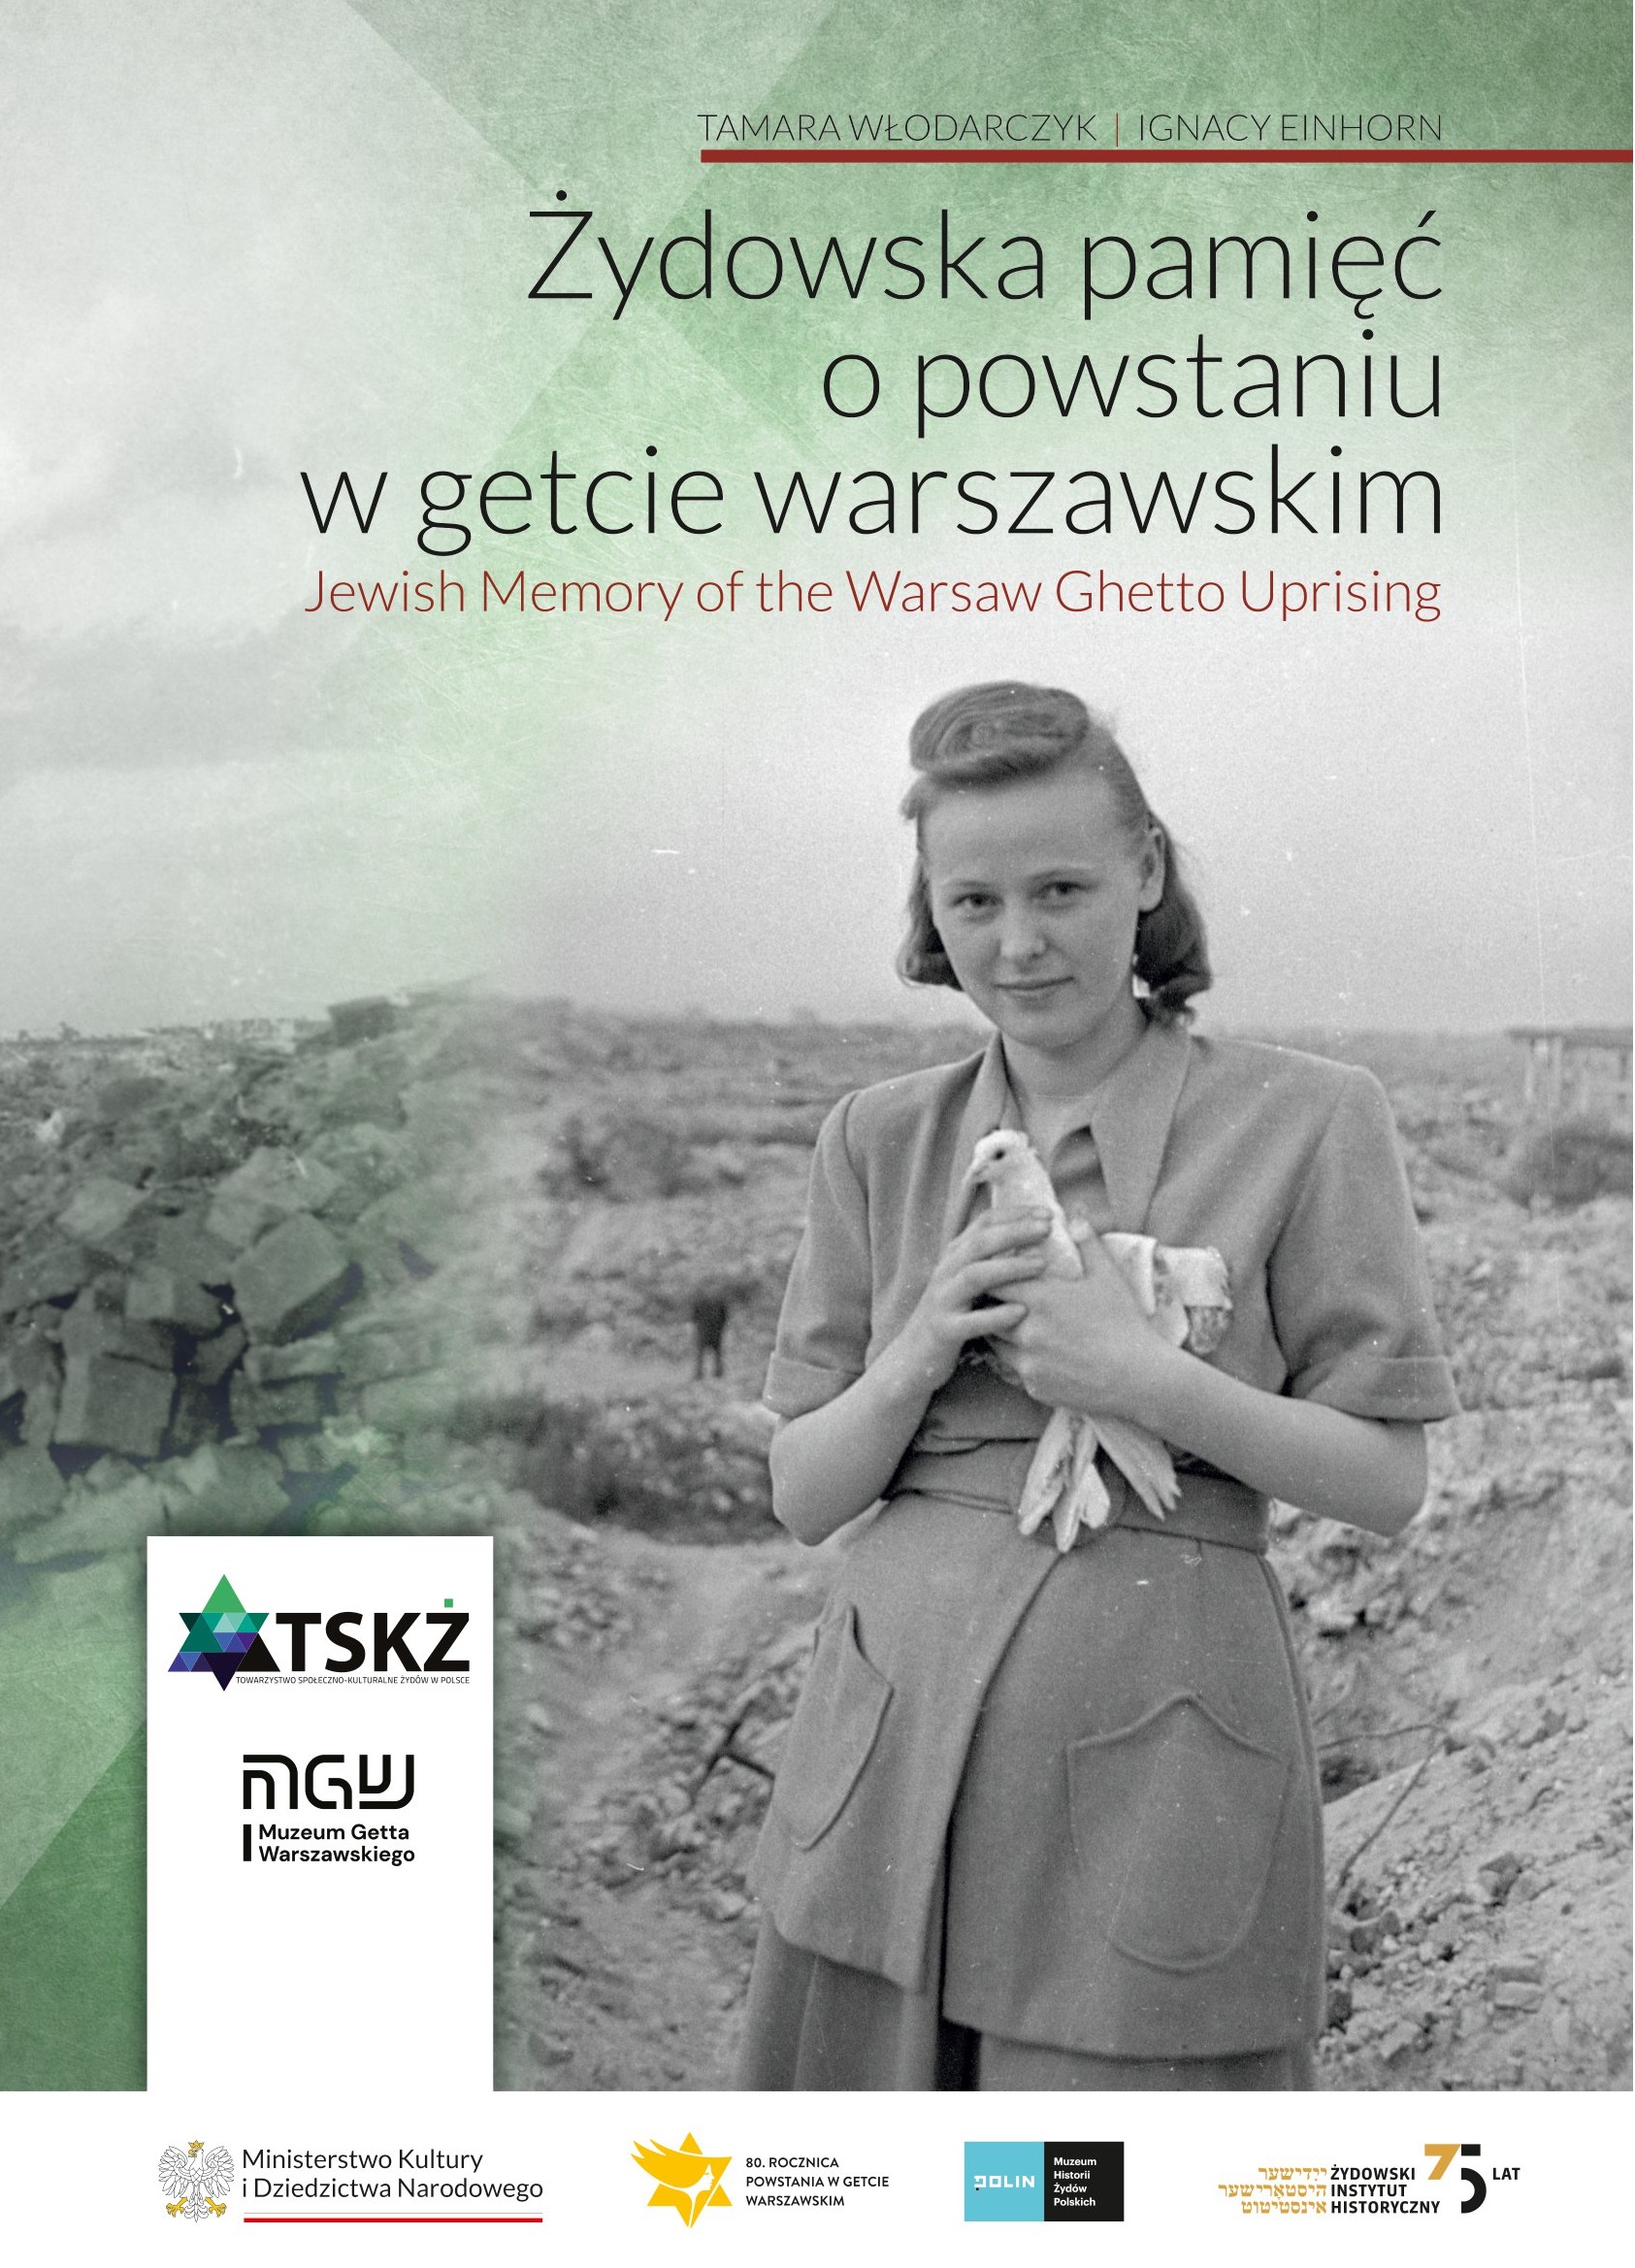 The Jewish Memory of the Warsaw Ghetto Uprising – a book by Tamara Włodarczyk and Ignacy Einhorn